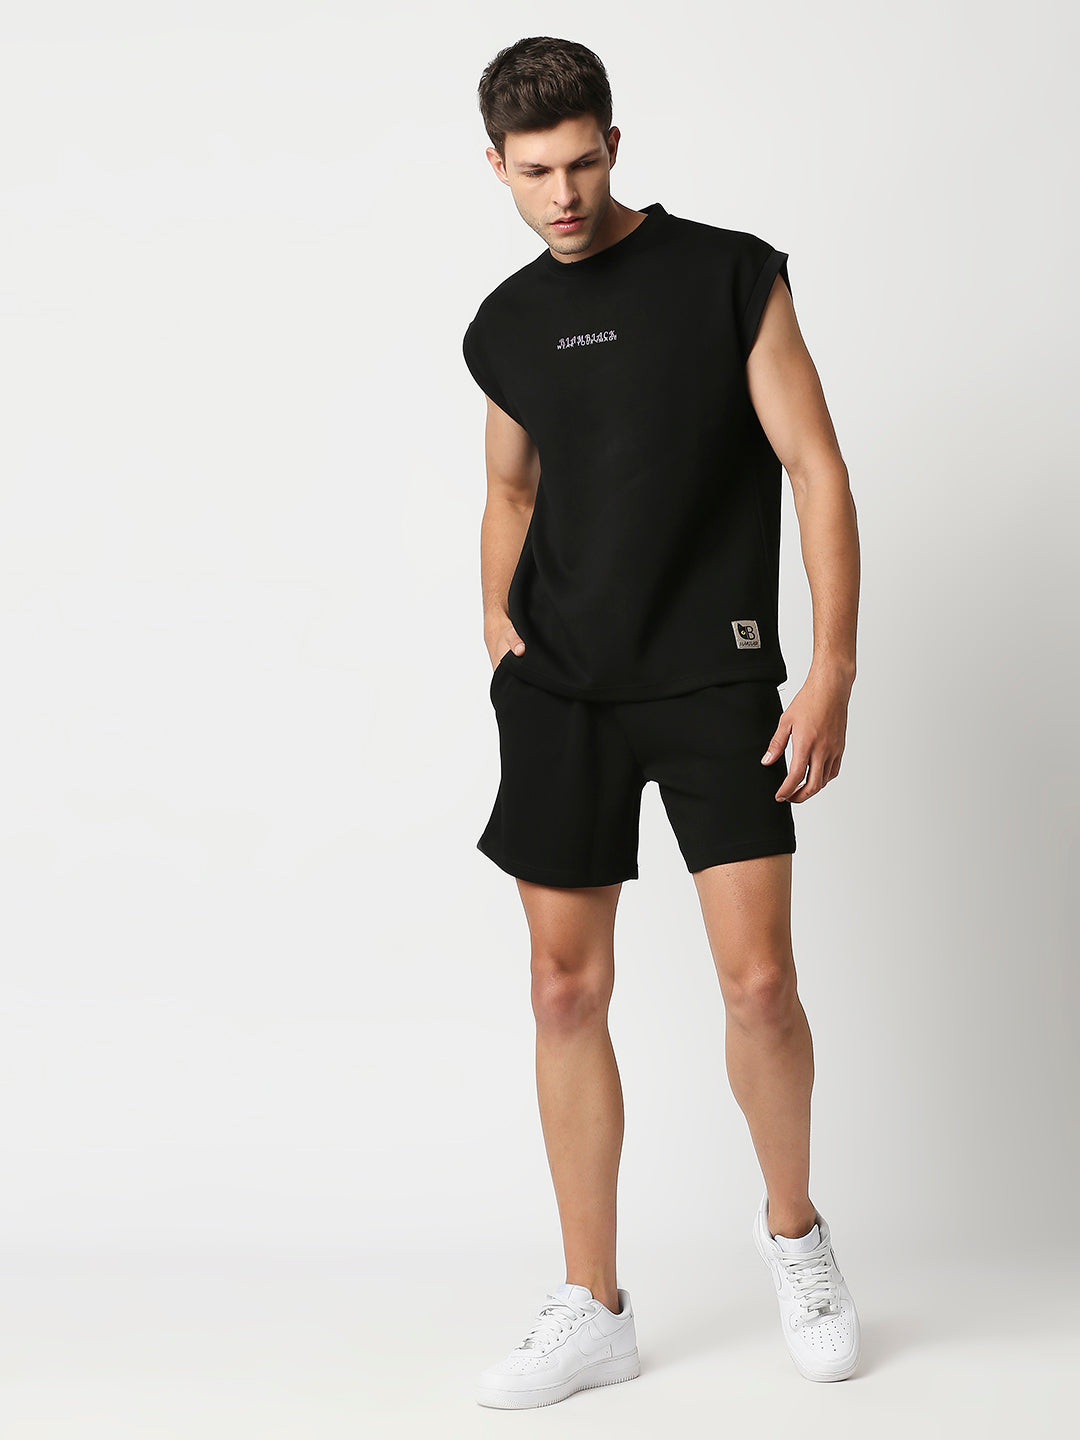 Buy Blamblack Men's Black Color Vest with Short Co-ordinate Set